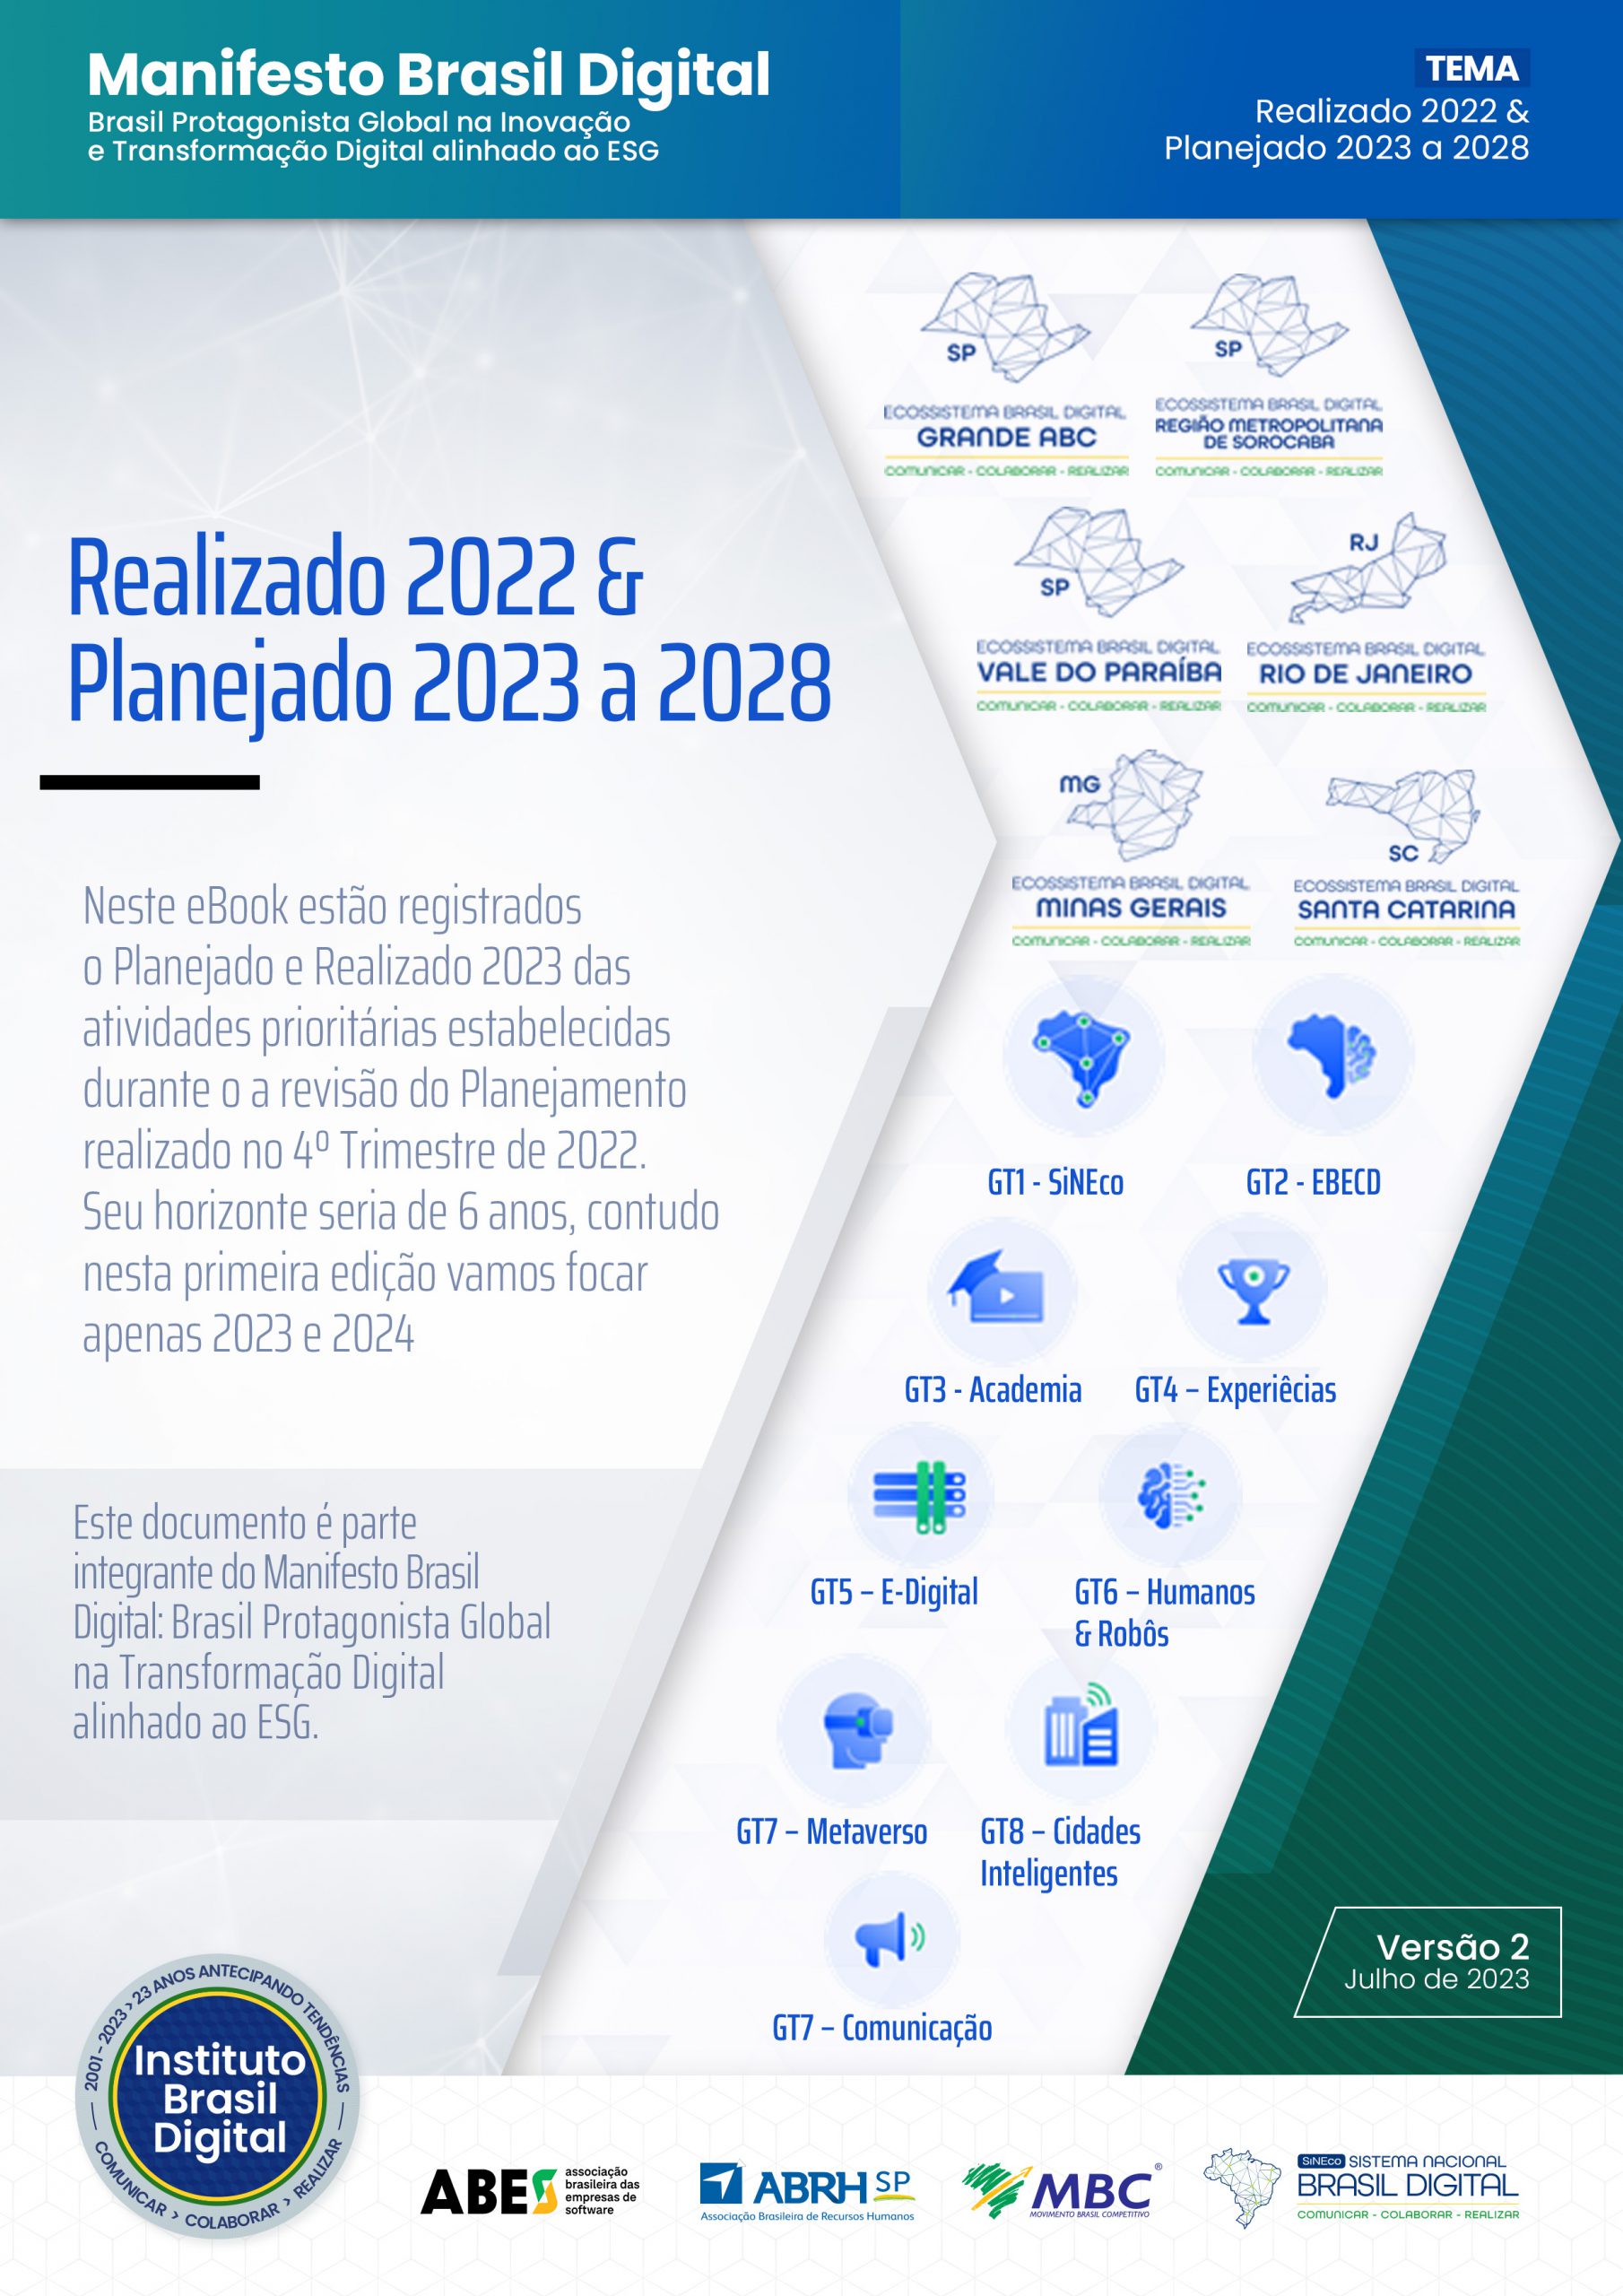 Capa-Realizado-e-Planejado-2023-V02-scaled